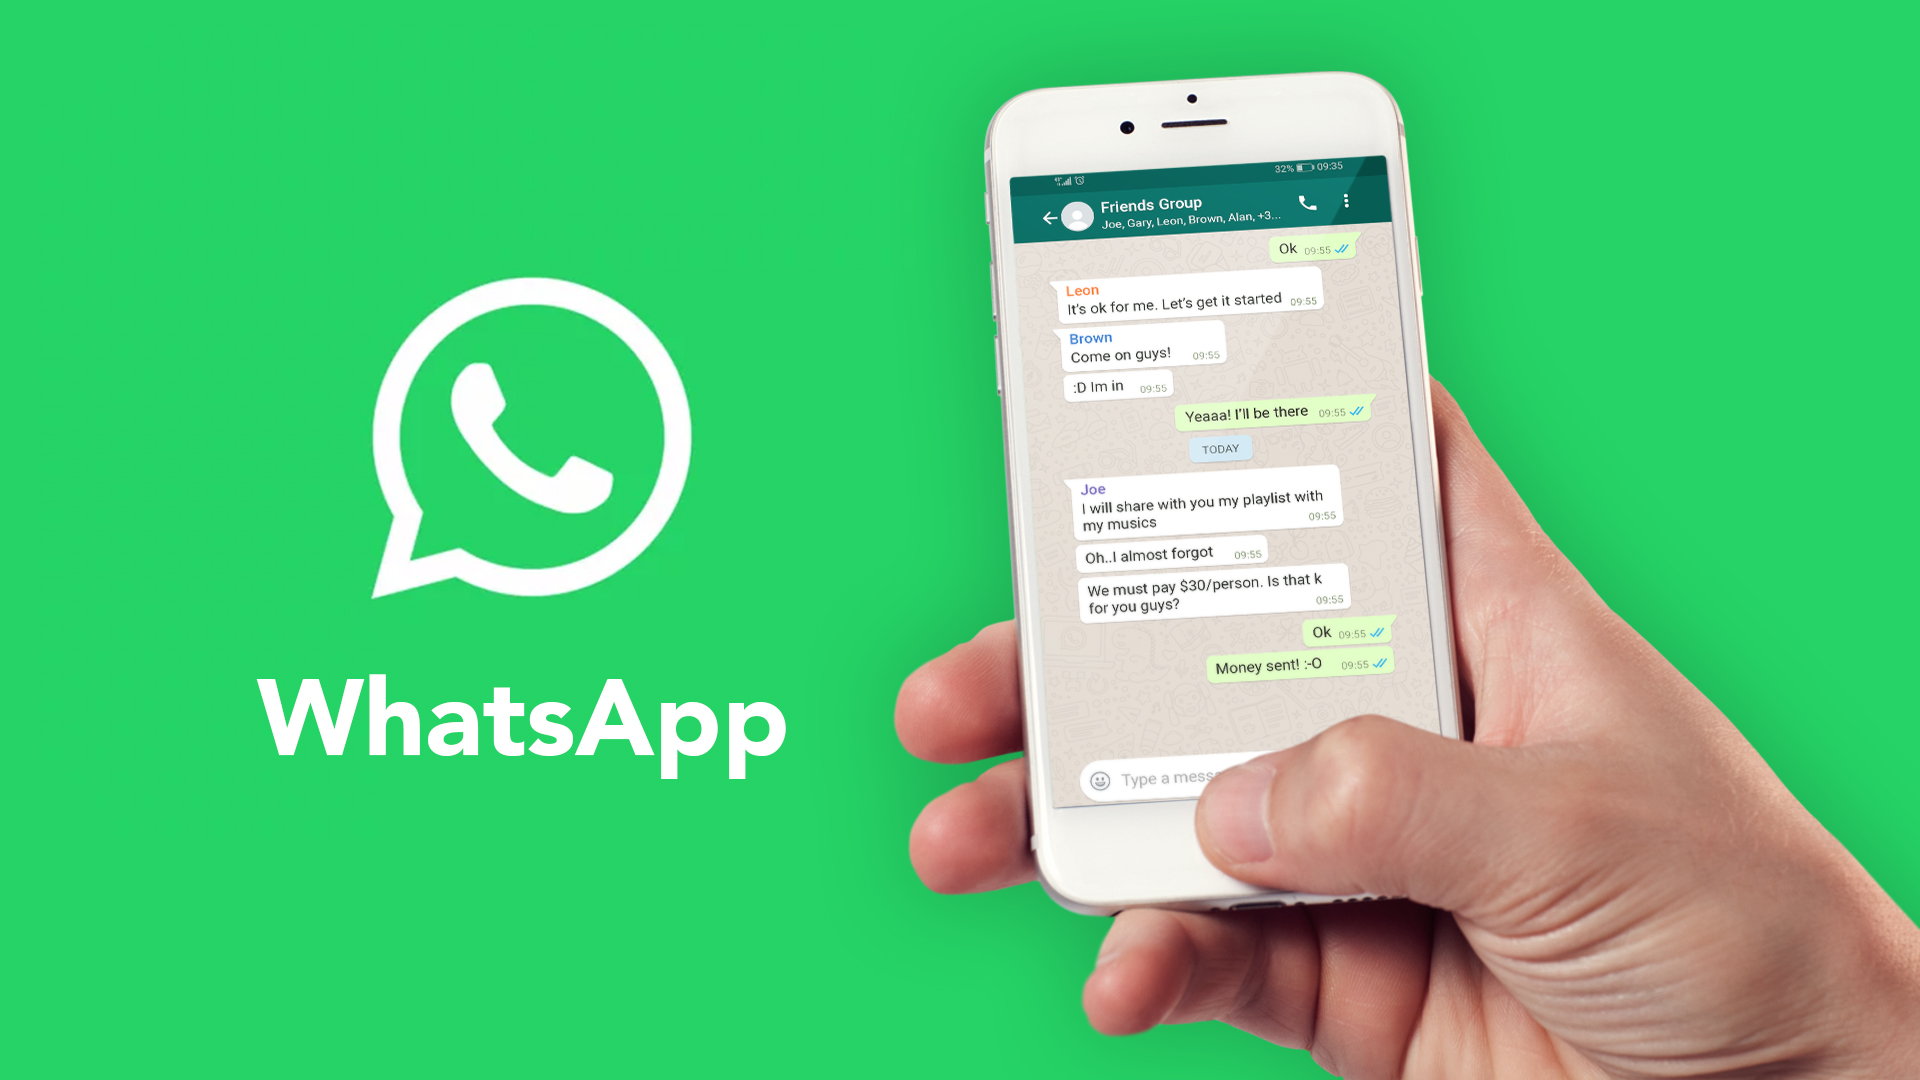 WhatsApp (Das Große Tutorial): Alles was du wissen musst